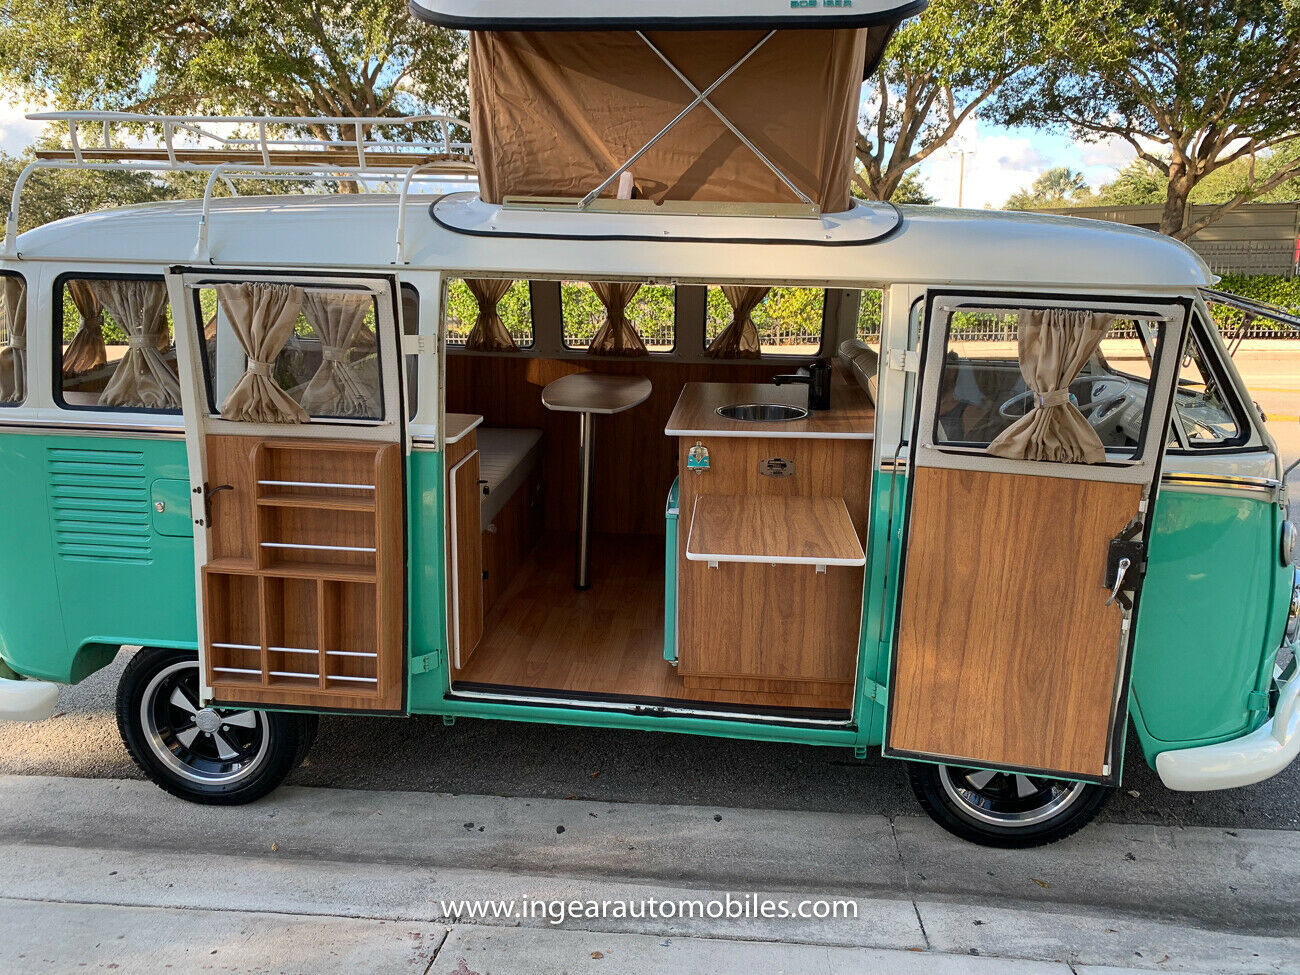 Split-Window '74 VW Vanagon Camper is Picture-Perfect -  Motors Blog